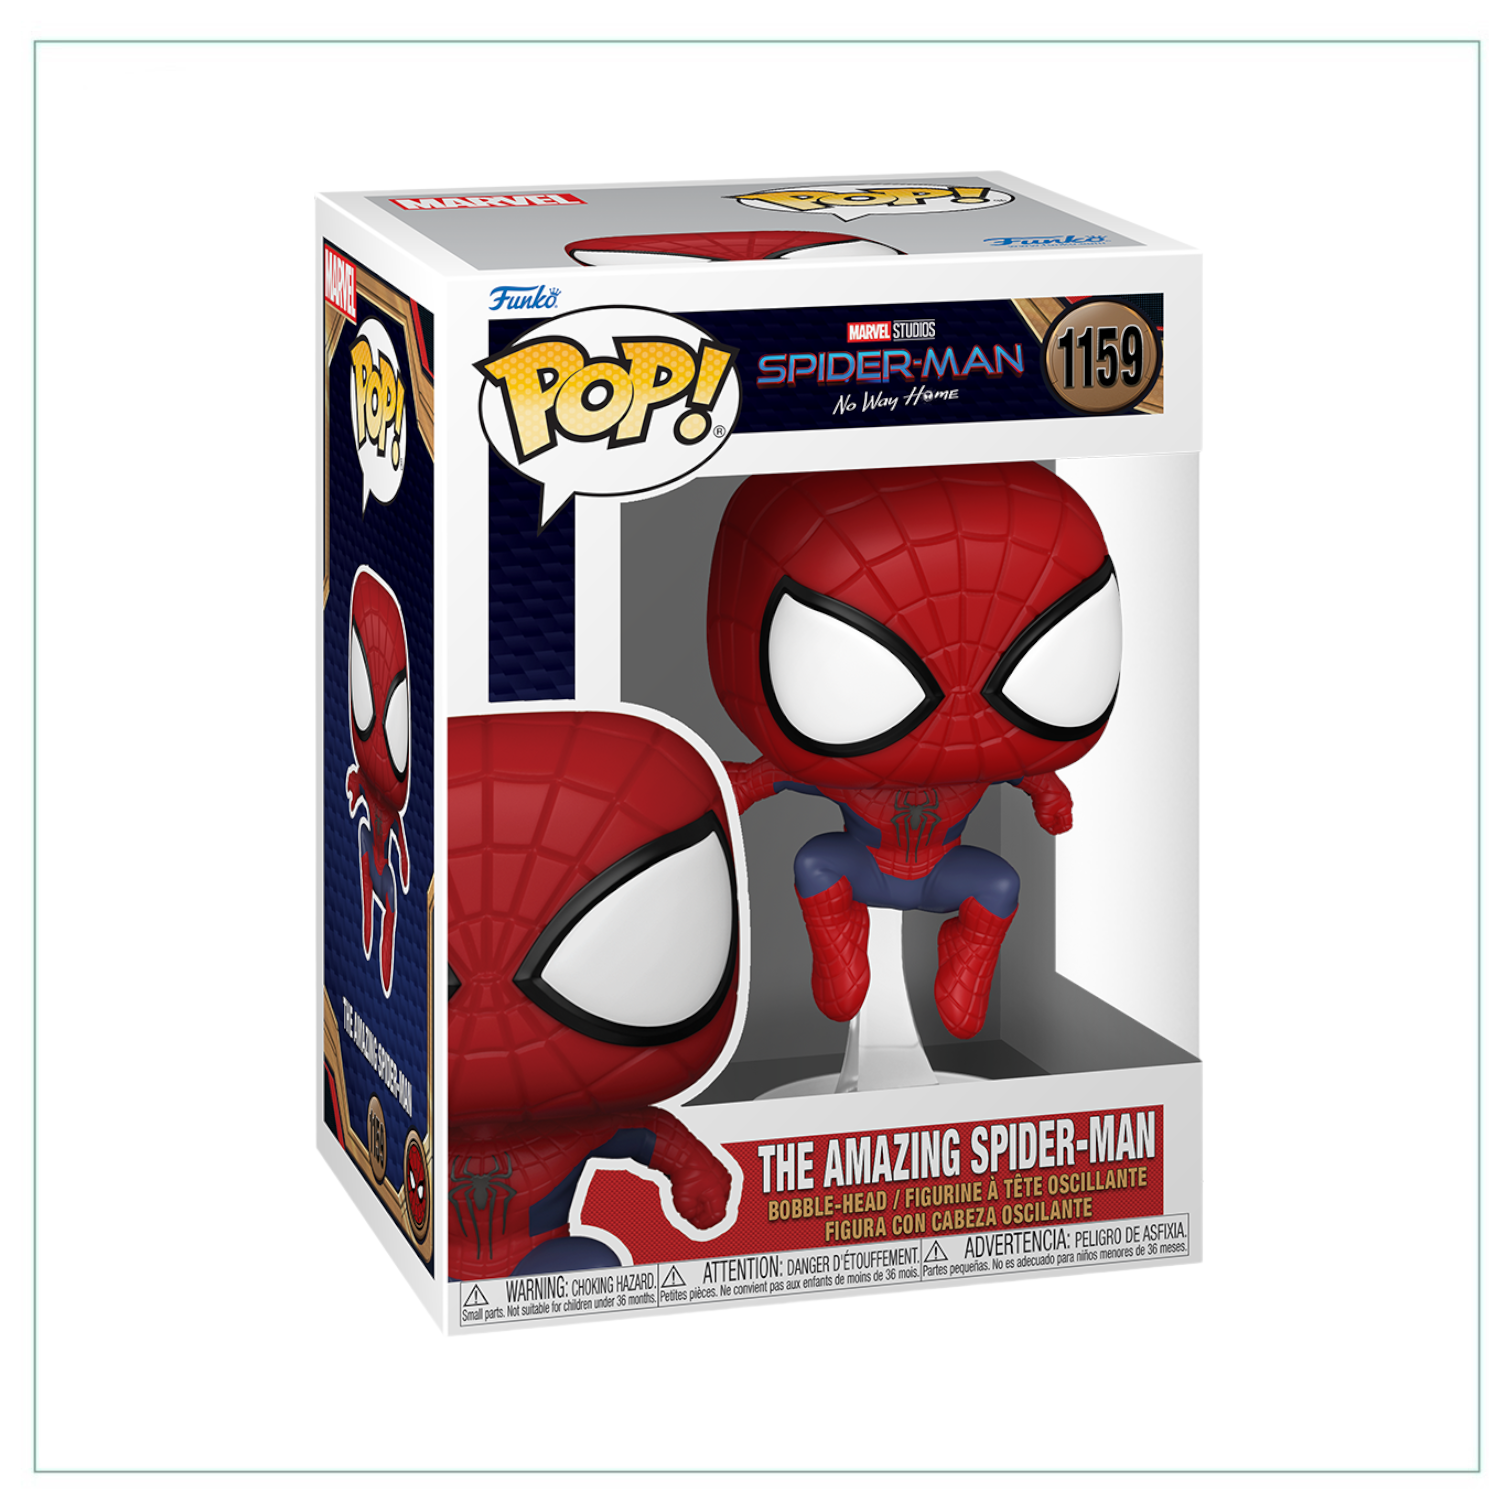 The Amazing Spider-Man #1159 Funko Pop! Spider-Man No Way Home